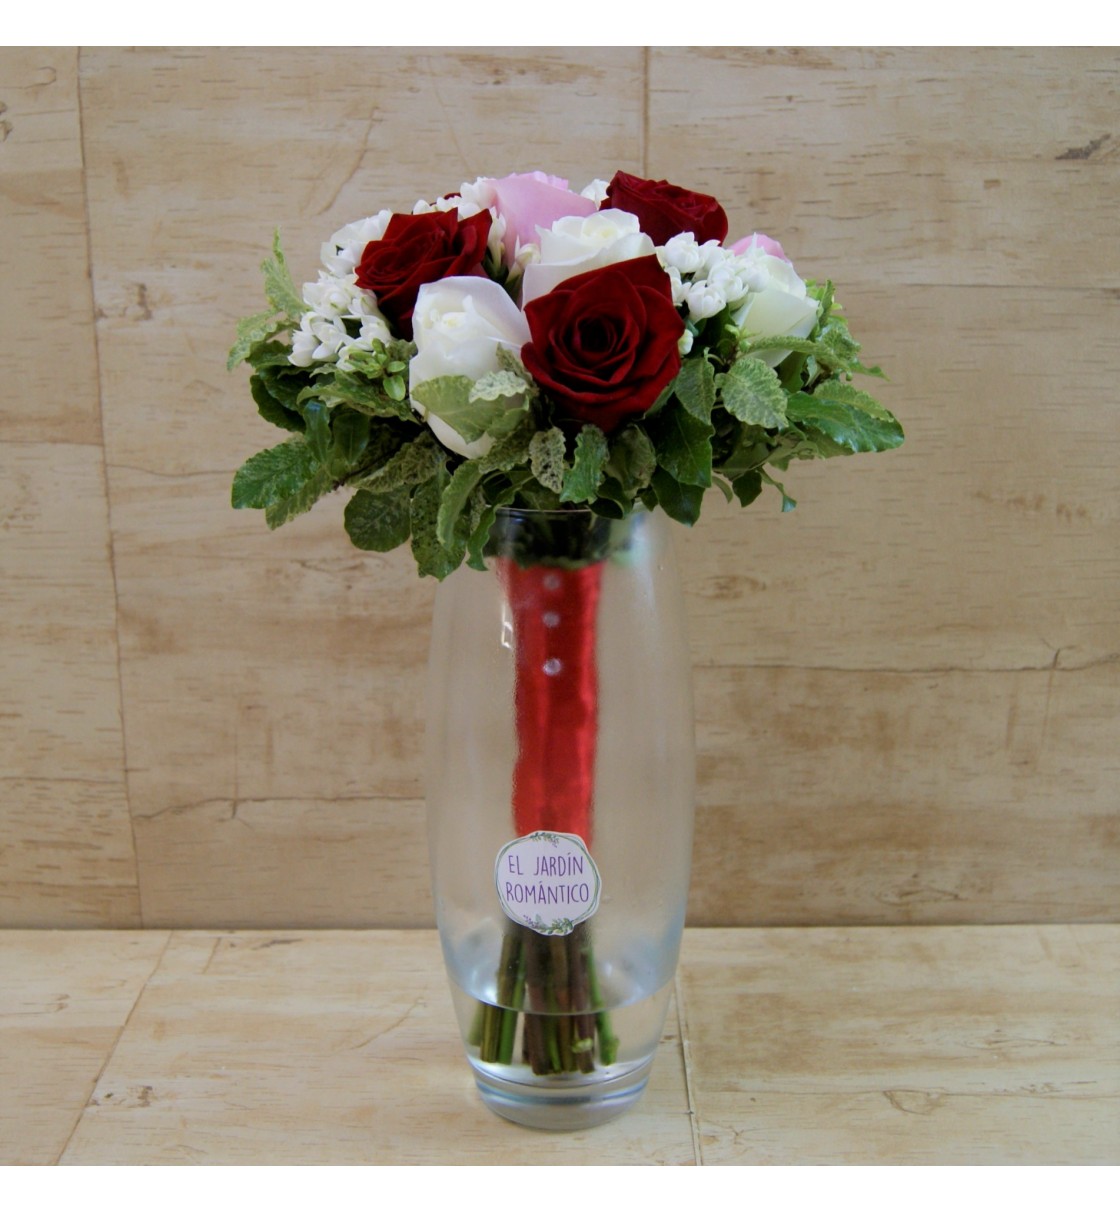 Ramo de novia con rosas en tonos rojo, blanco y rosa, bouvardia blanca